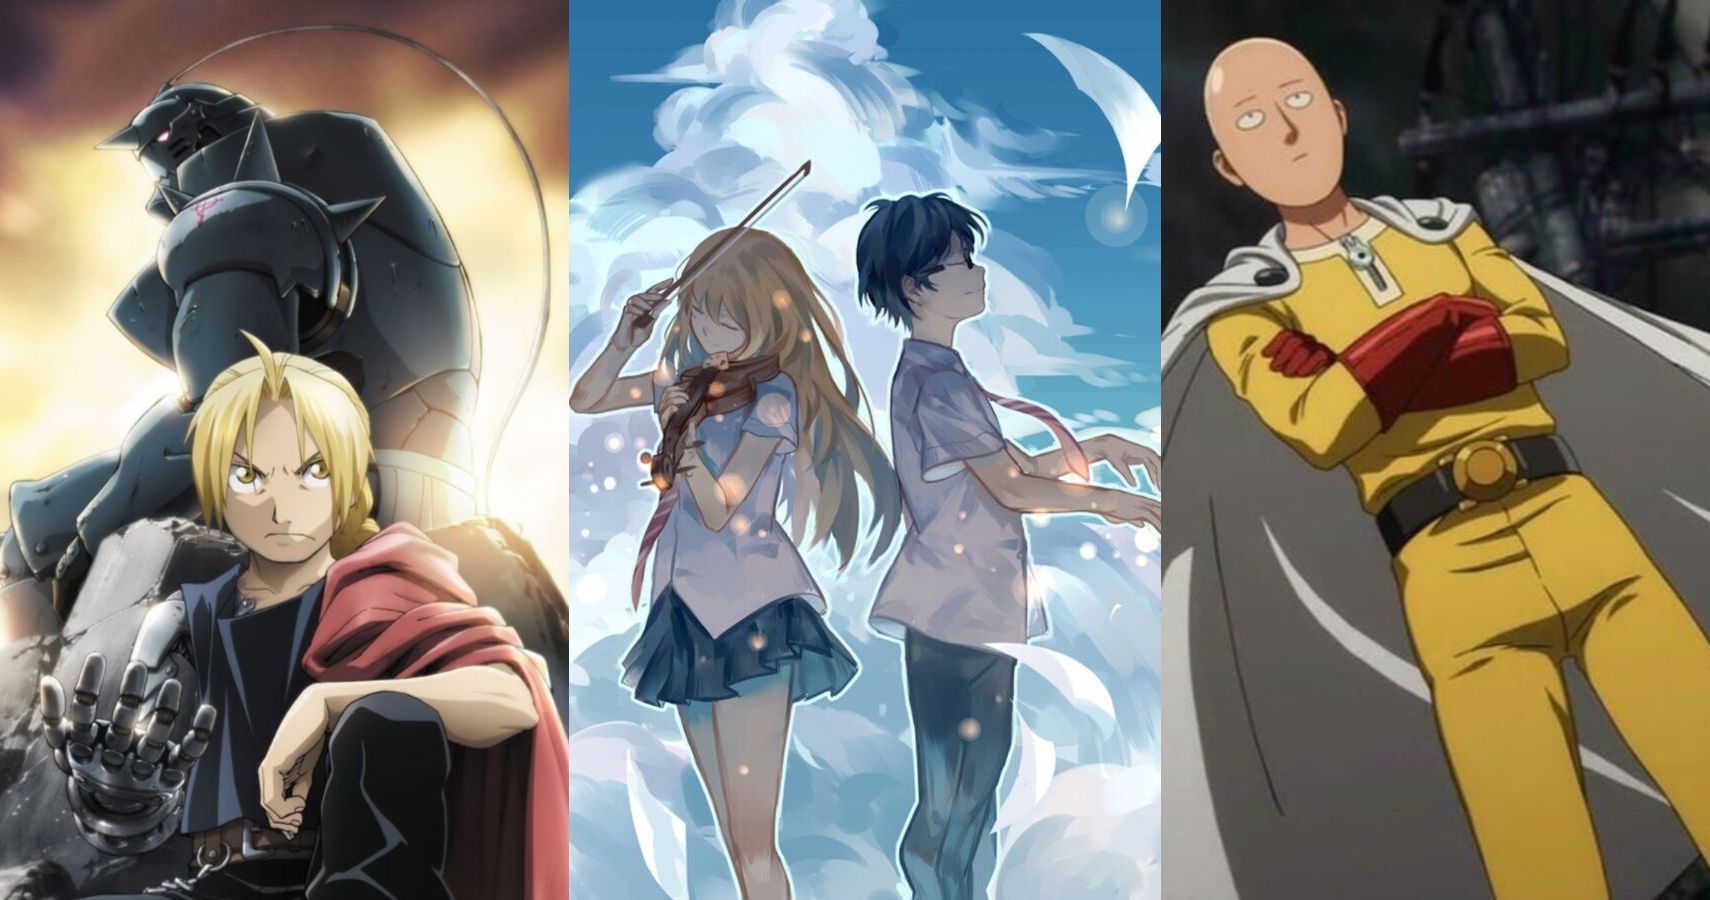 Top 5 binge-worthy Anime Series on Netflix